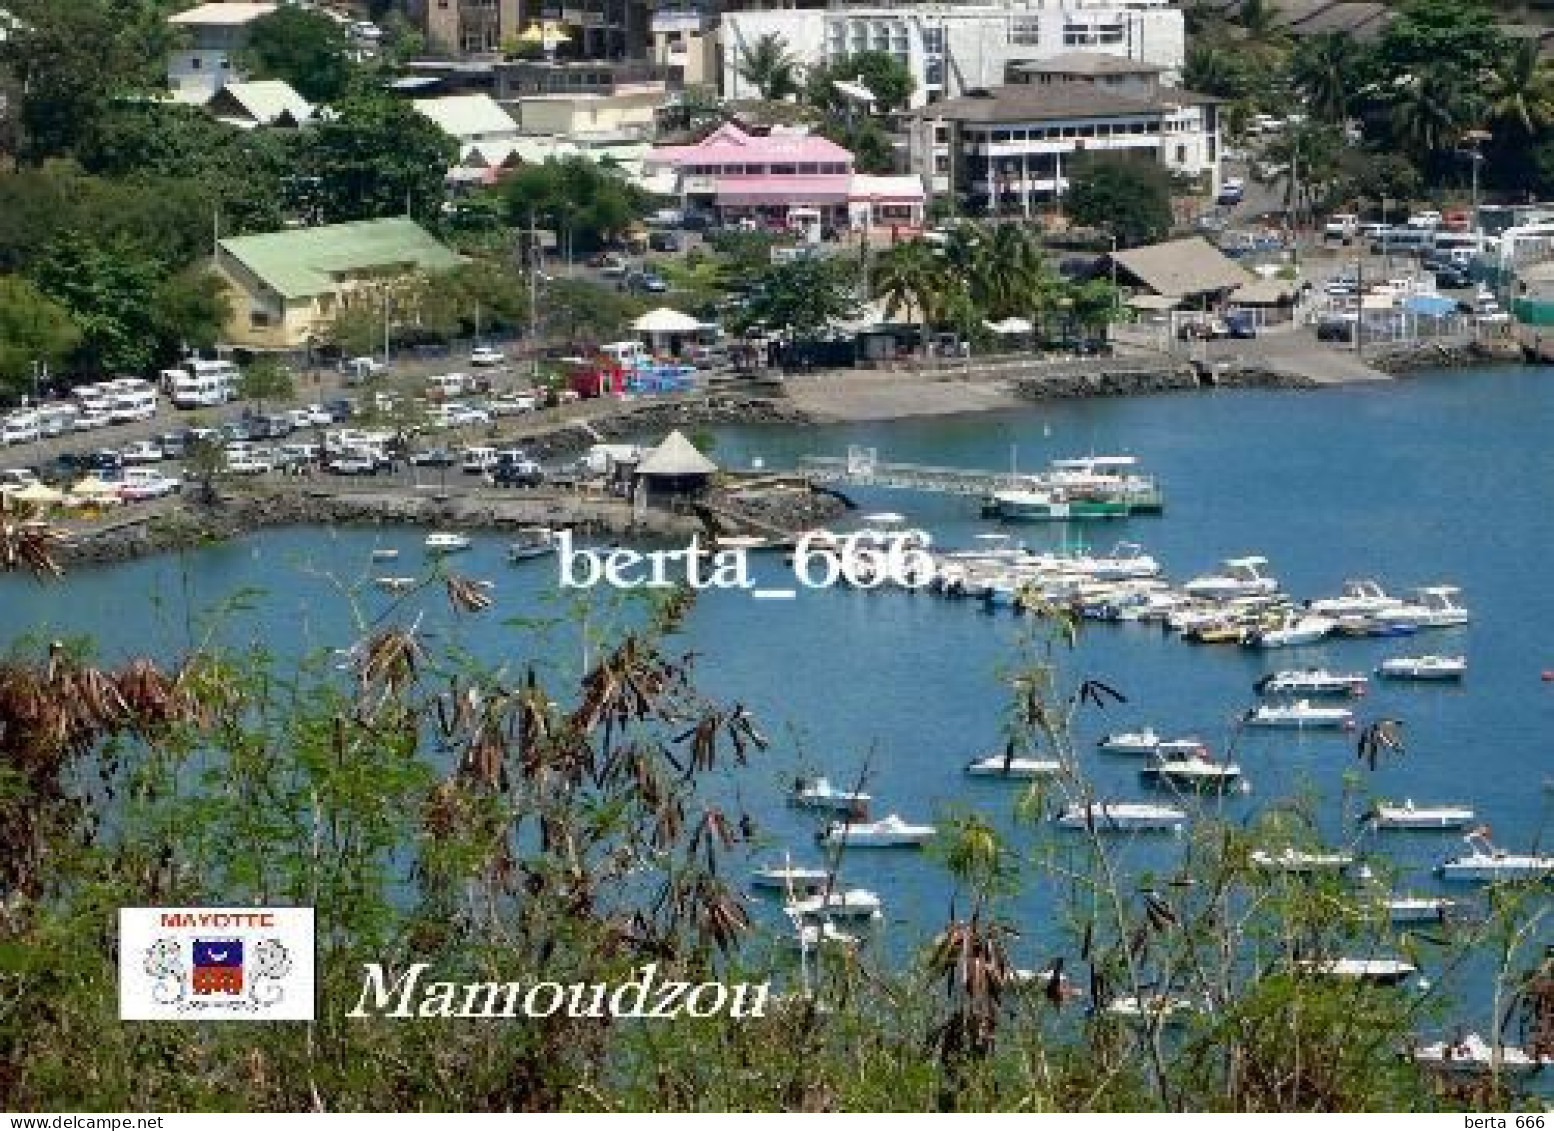 Mayotte Mamoudzou New Postcard - Mayotte